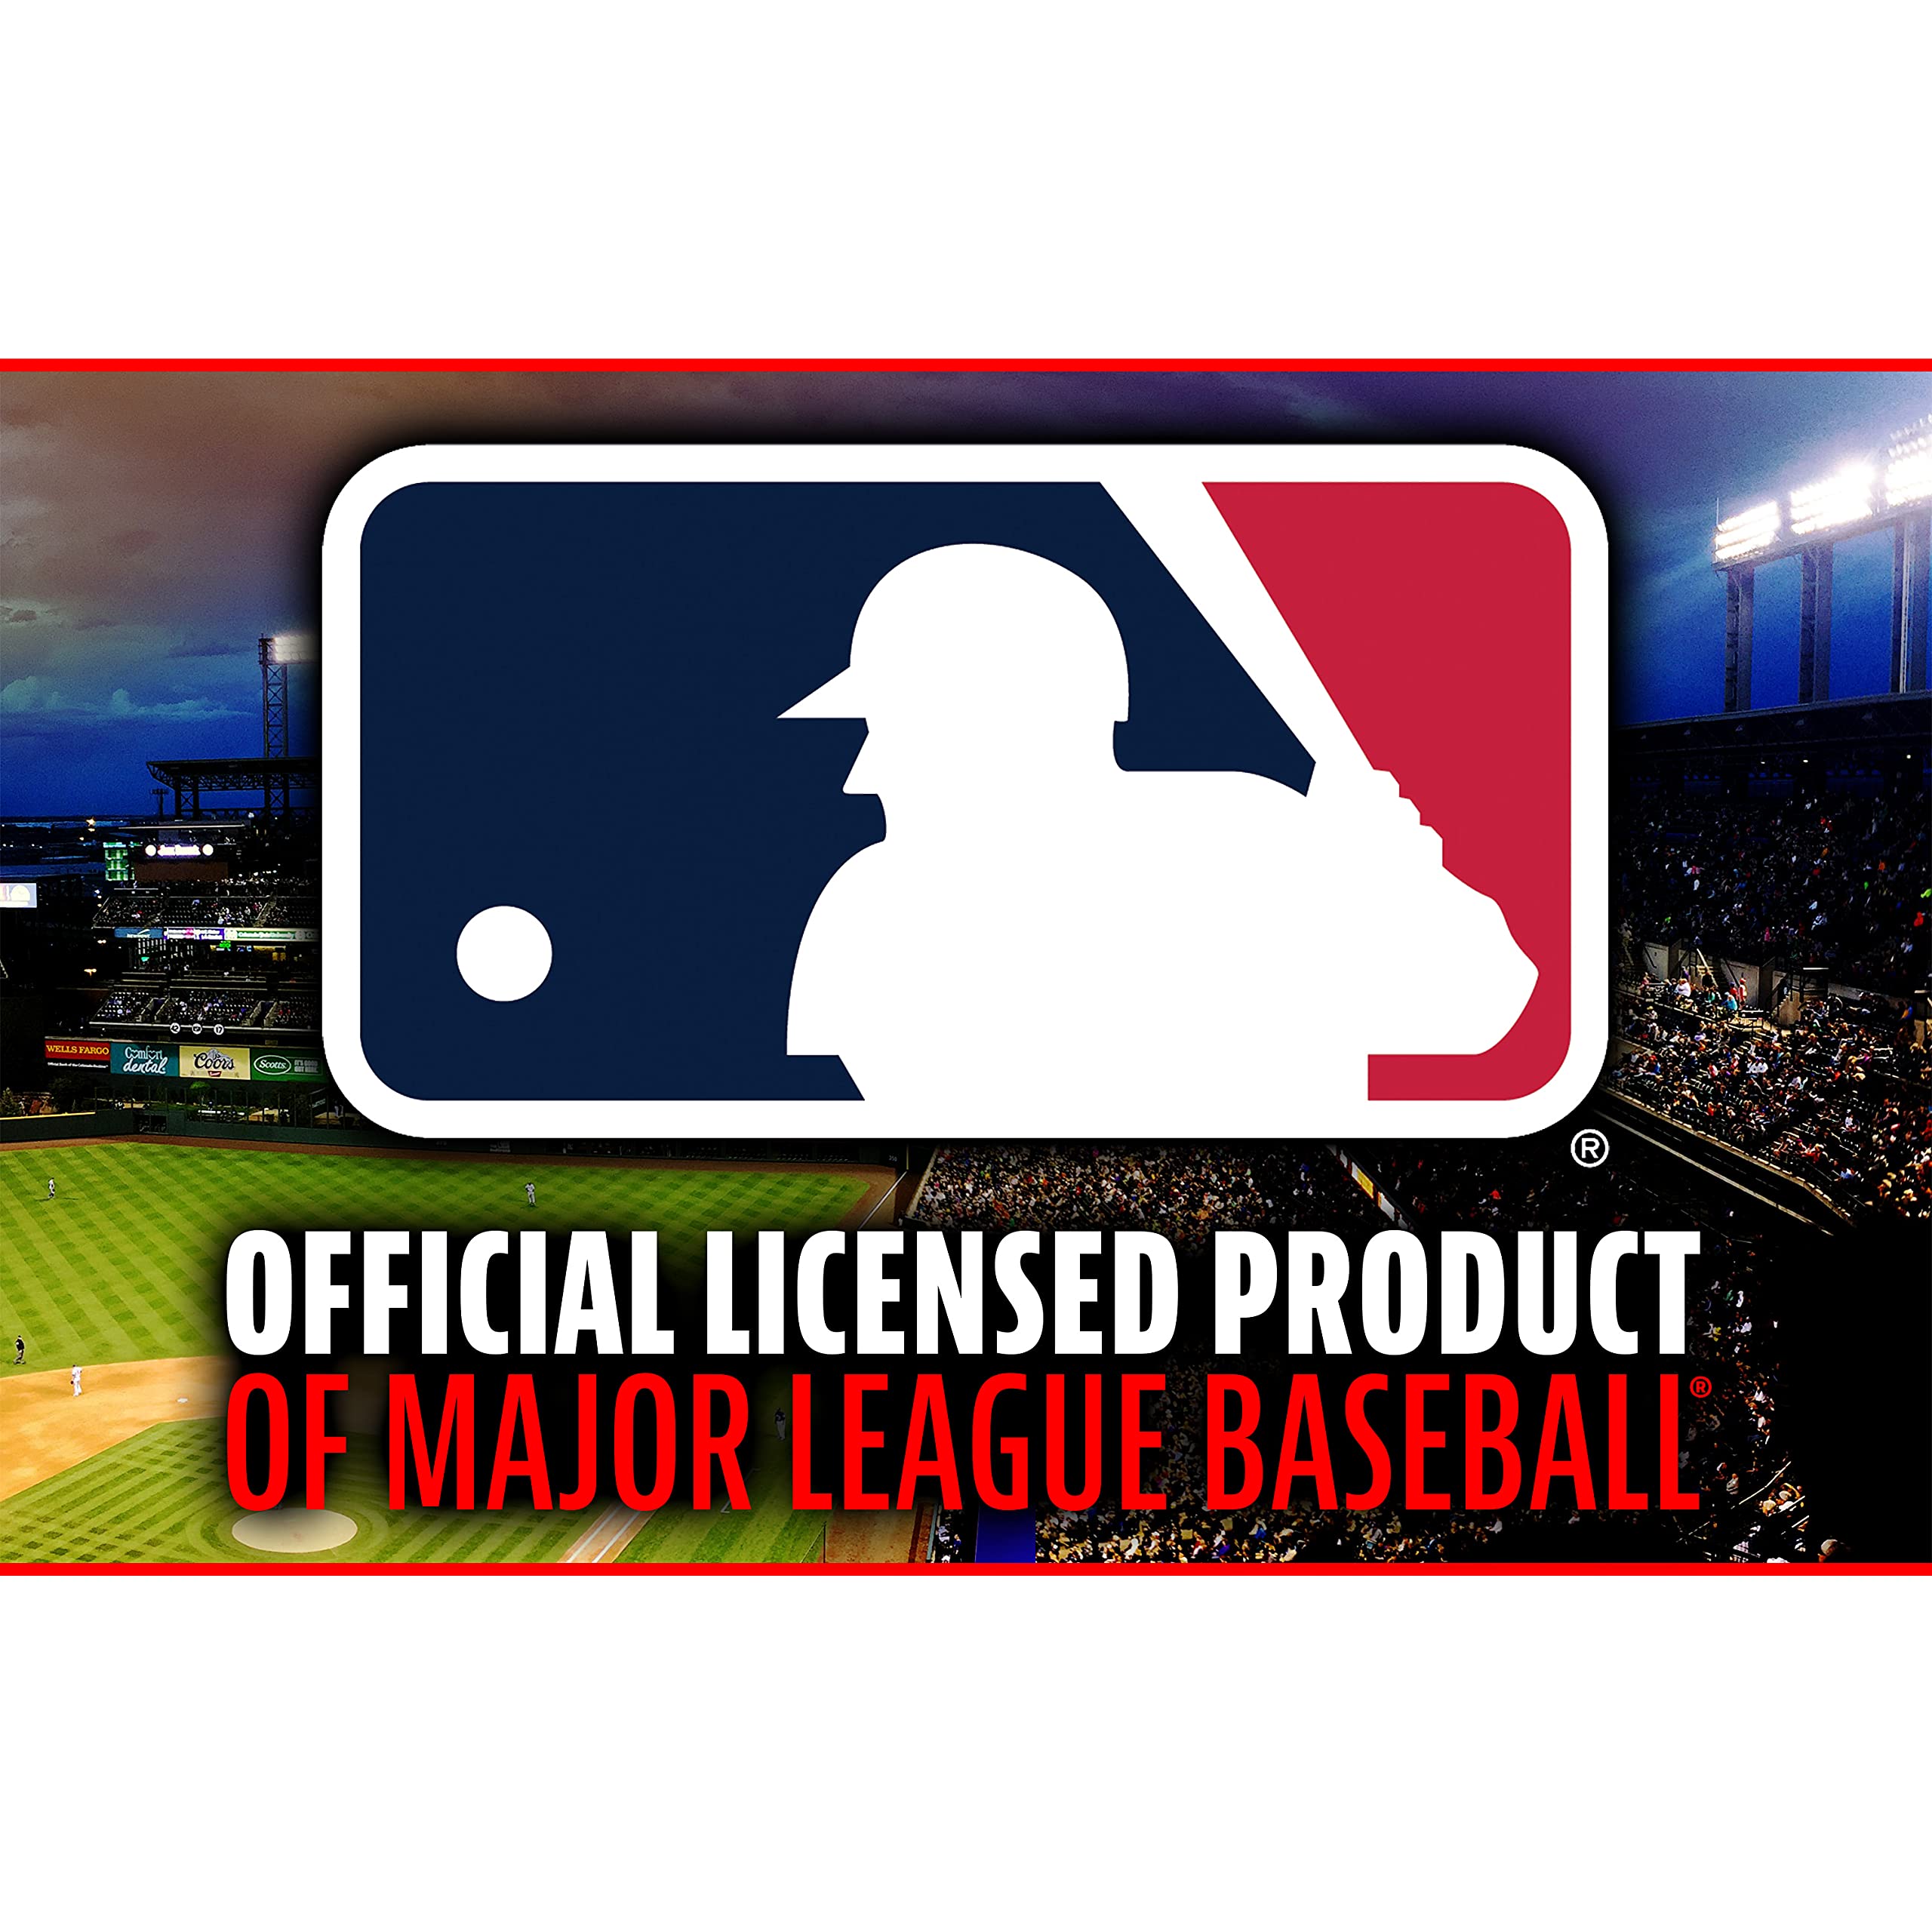 Franklin Sports MLB Teeball Starter Set - Youth Baseball and Tball Tee, Baseball and Bases with Rebounder Net - Full Beginner